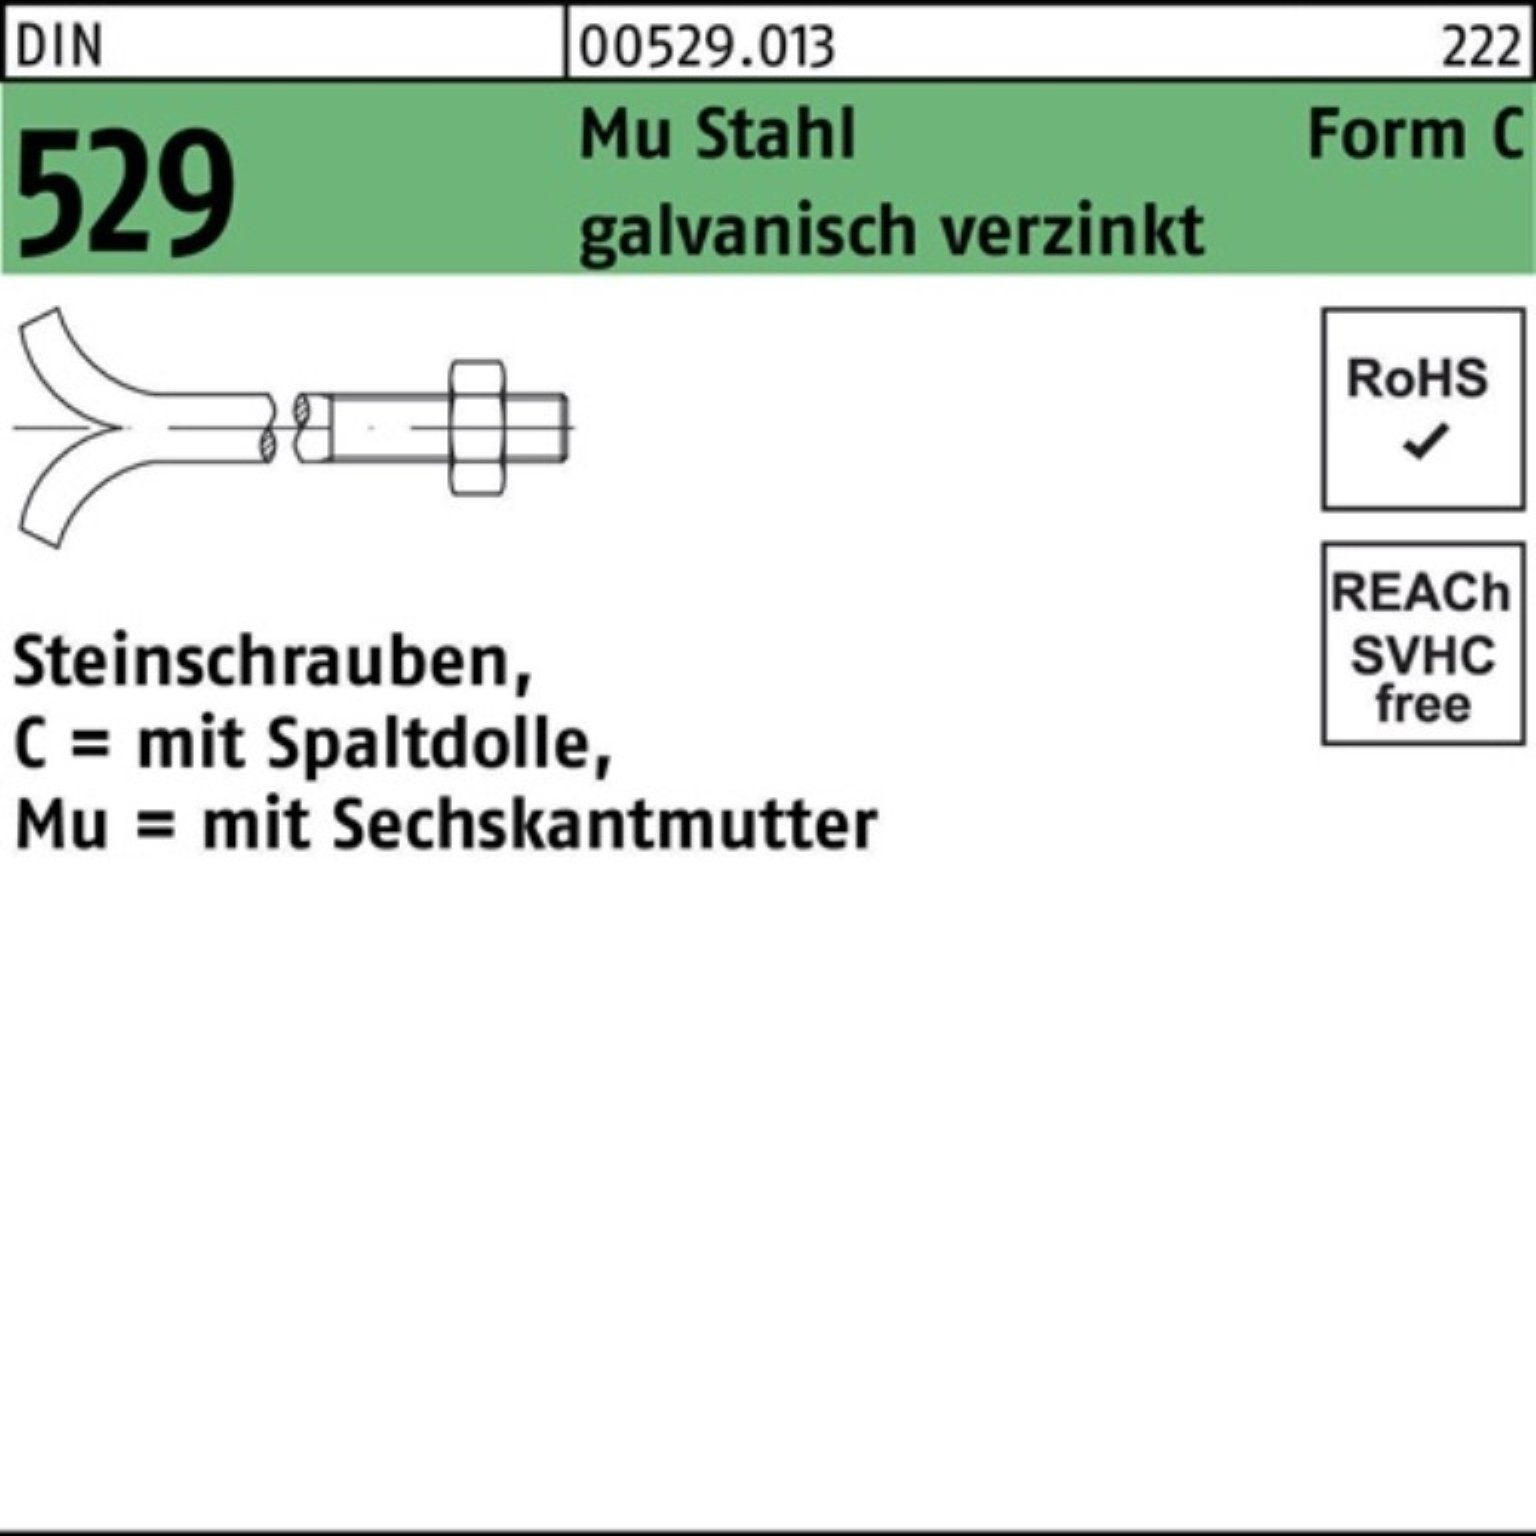 Reyher Schraube 100er 529 Pack Steinschraube DIN CM 16x320 Mu 3. Spaltdolle/6-ktmutter